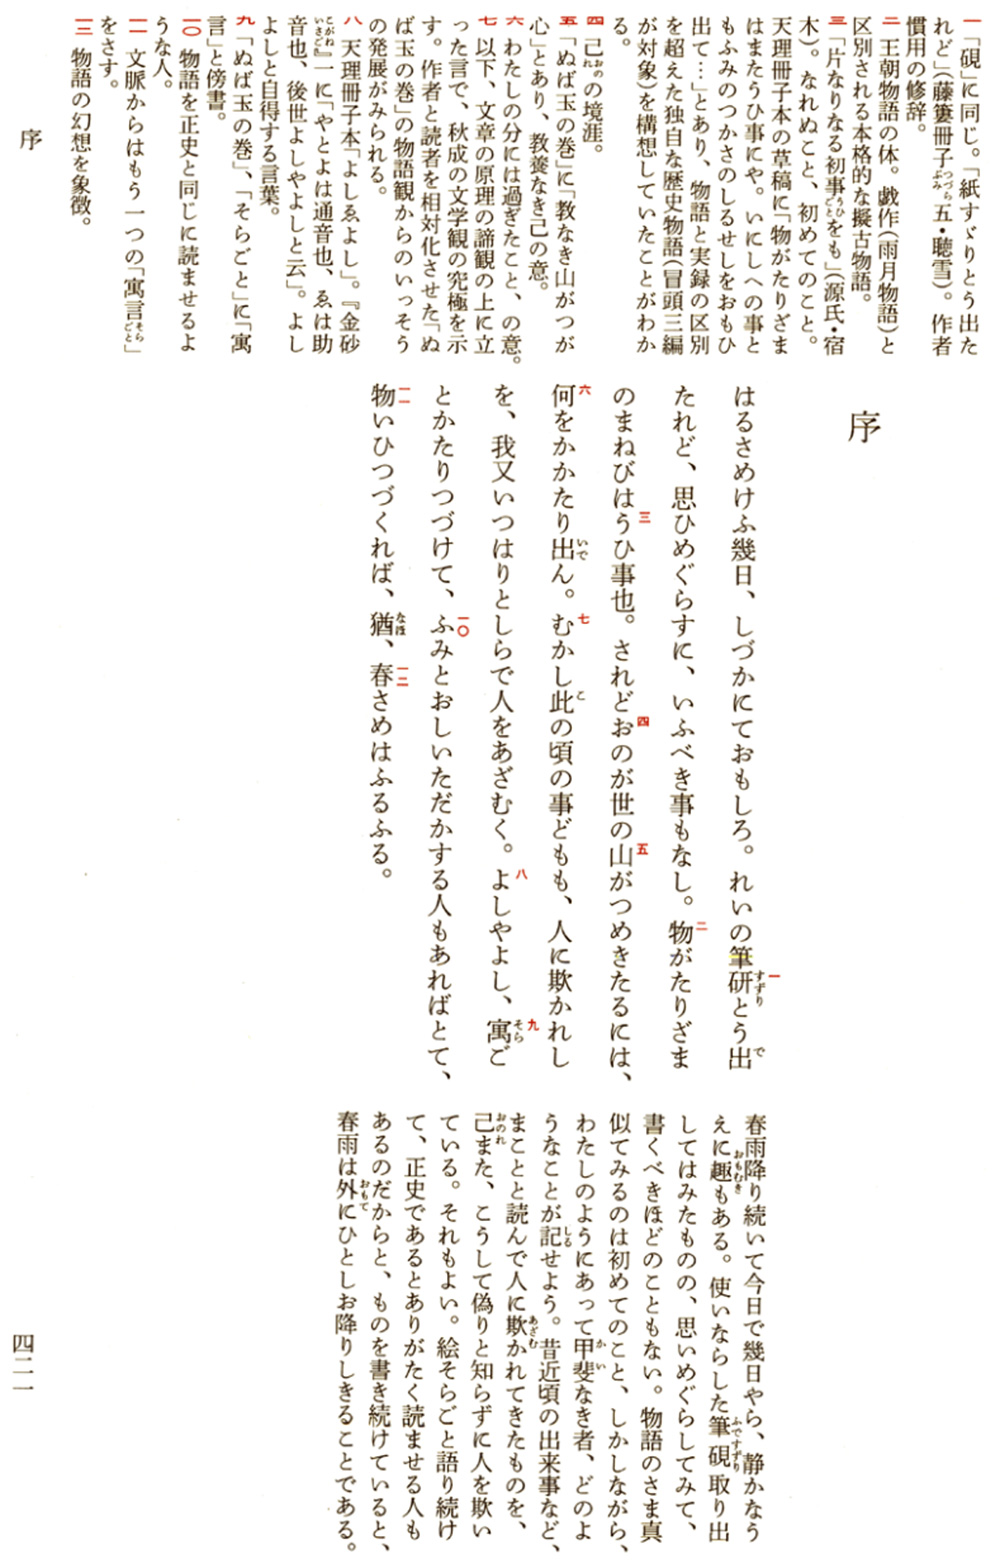 春雨物語 日本古典文学全集 国史大辞典 ジャパンナレッジ